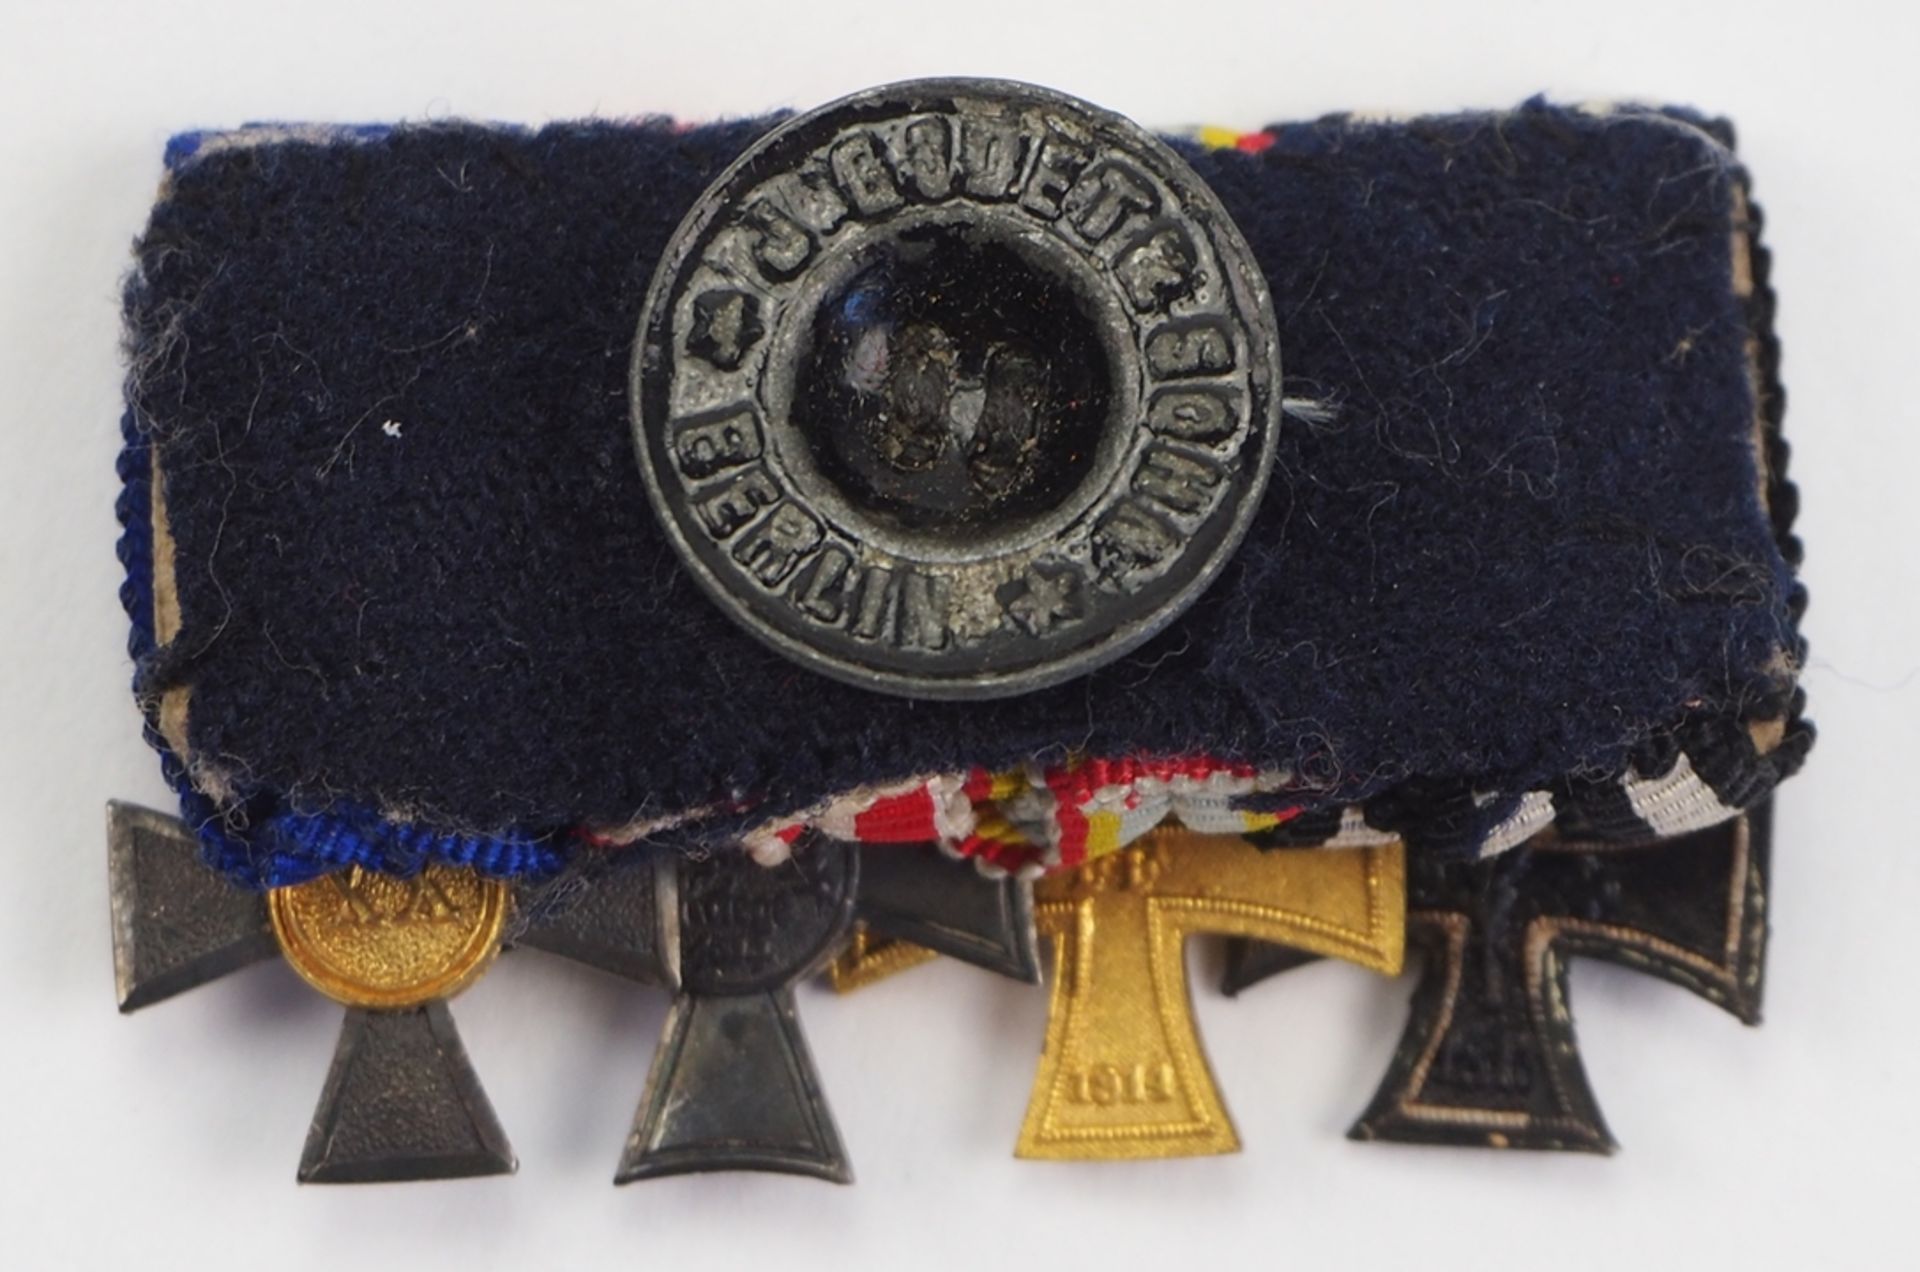 Mecklenburg-Schwerin: Miniatur-Schnalle eines Landwehr-Offiziers mit 4 Auszeichnungen. - Image 3 of 3